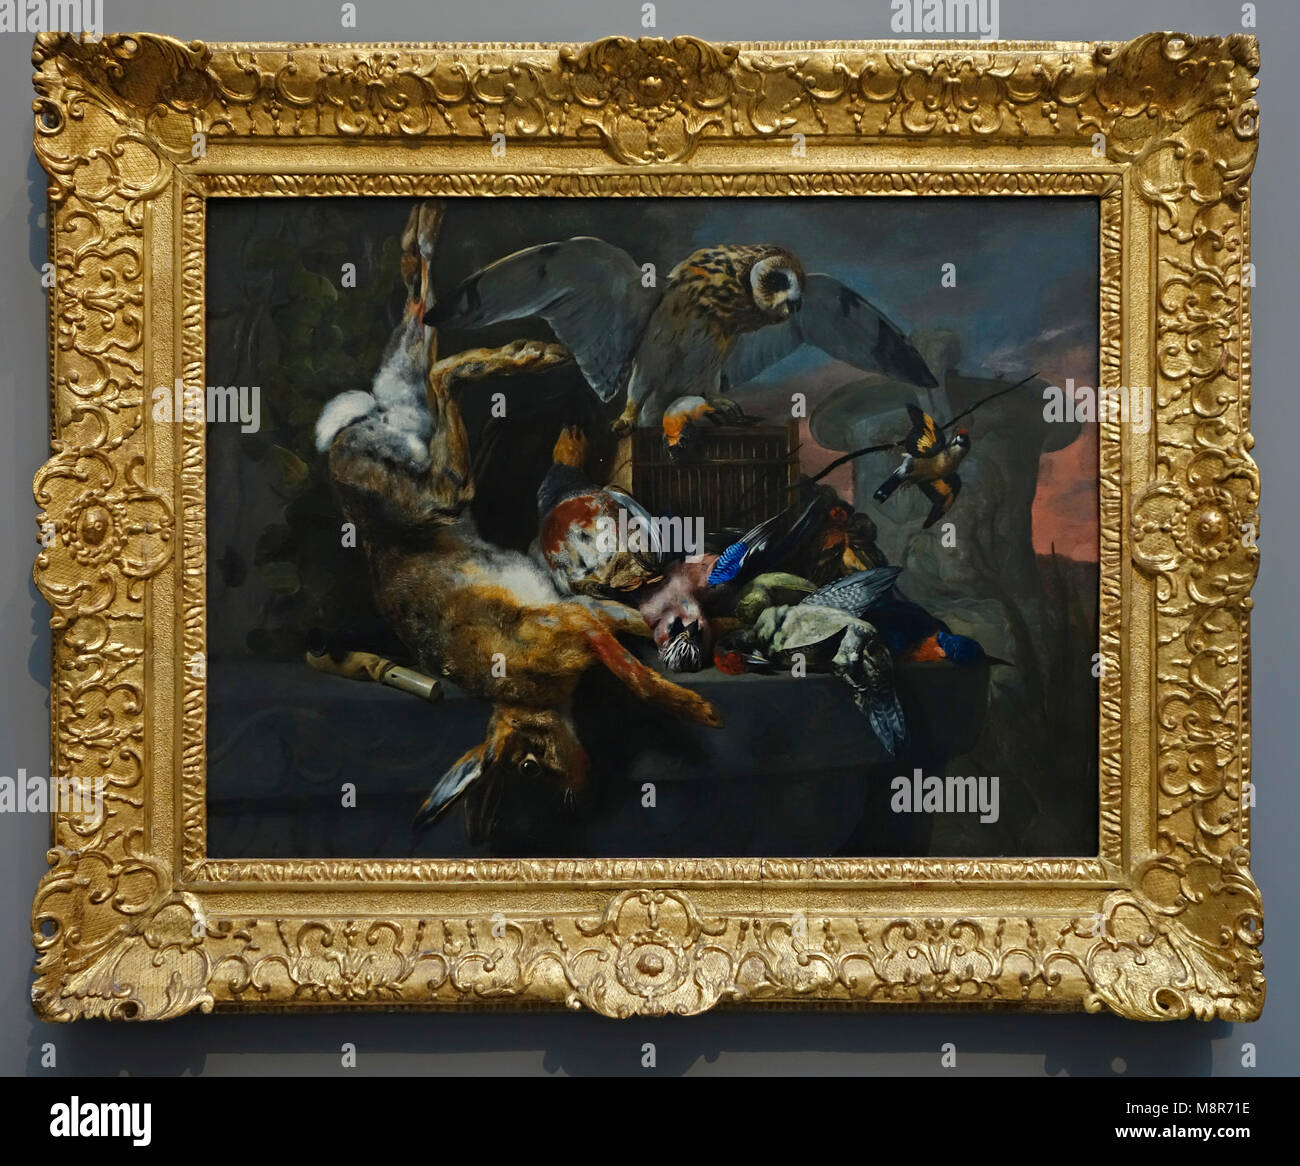 Nature morte avec un hibou et un trophée de chasse, 17e siècle huile sur toile toile de peintre flamand Pieter Boel / Peeter Boel de l'École d'Anvers Banque D'Images